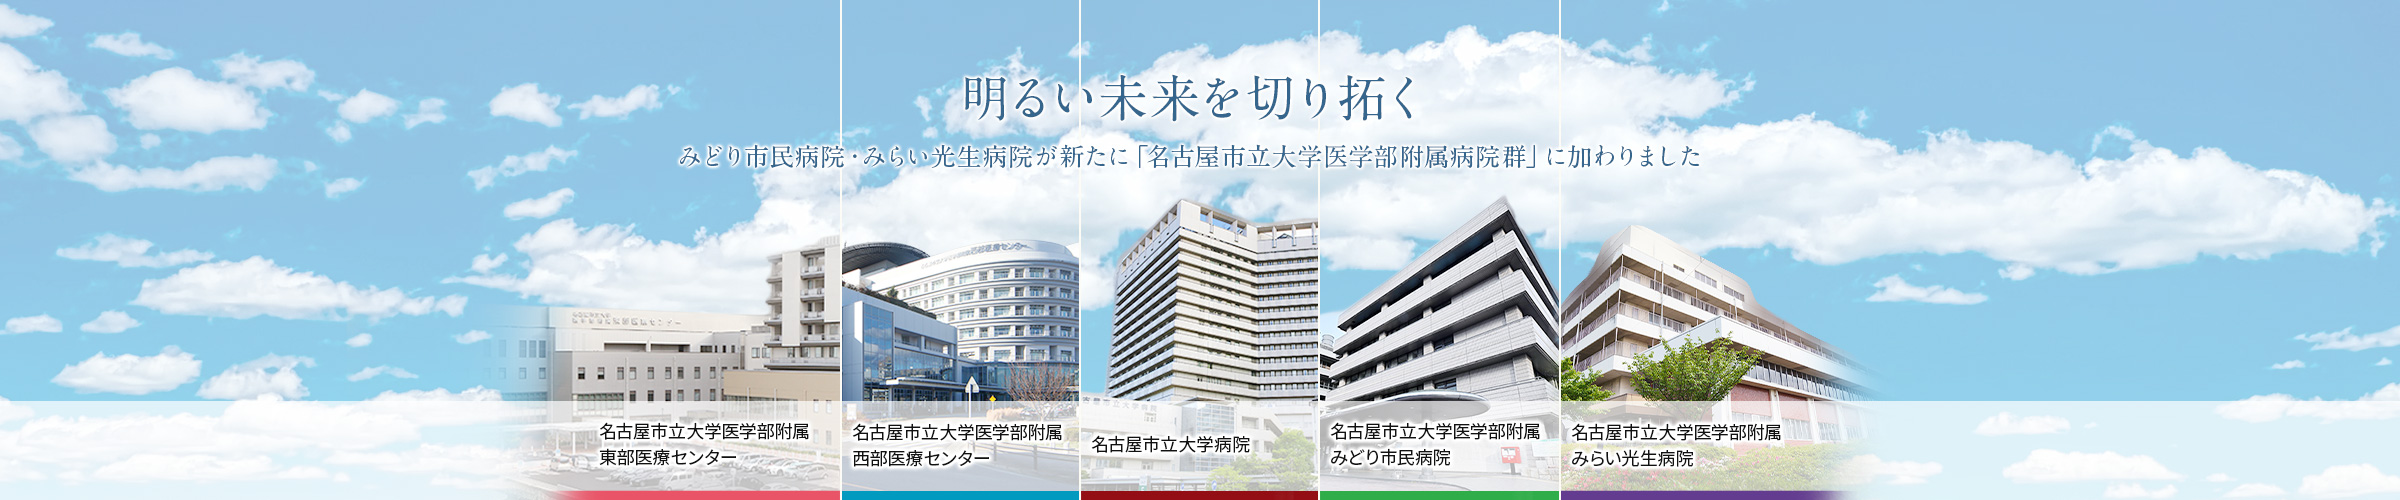 みどり市民病院、みらい光生病院が新たに「名古屋市立大学医学部附属病院群」に加わりました